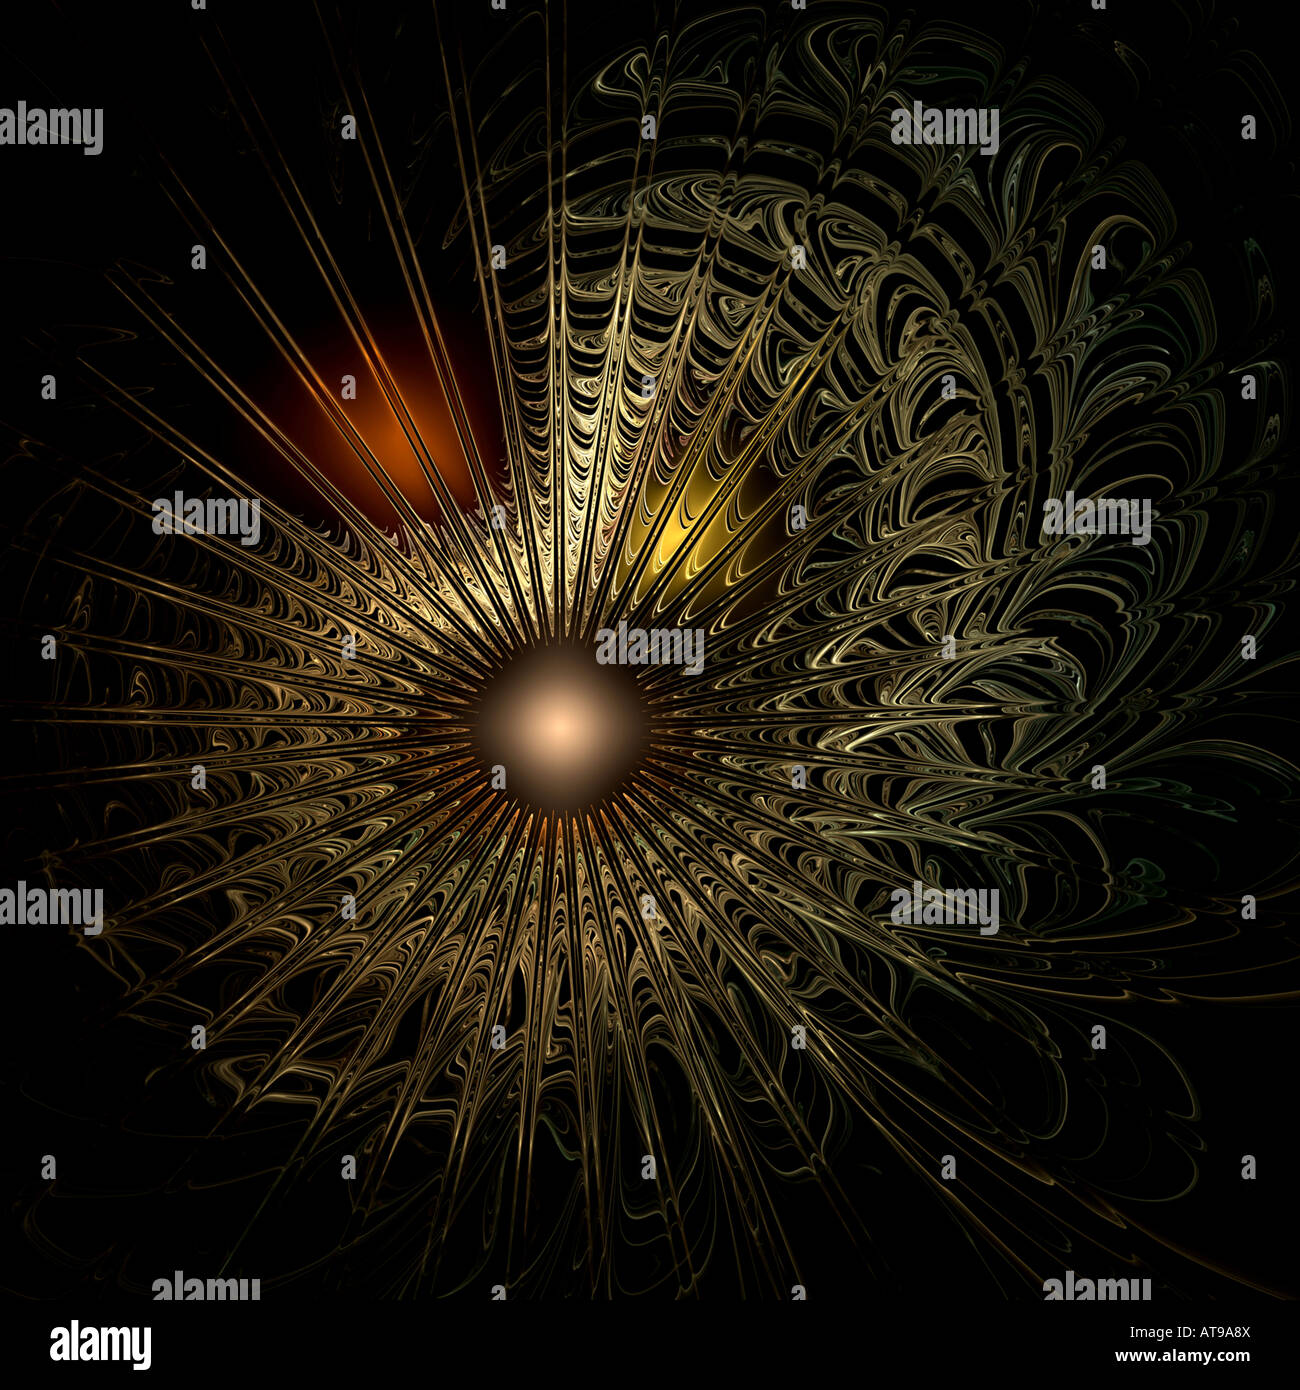 Résumé de l'image fractale ressemblant au big bang ou à la naissance de l'univers et les galaxies Banque D'Images